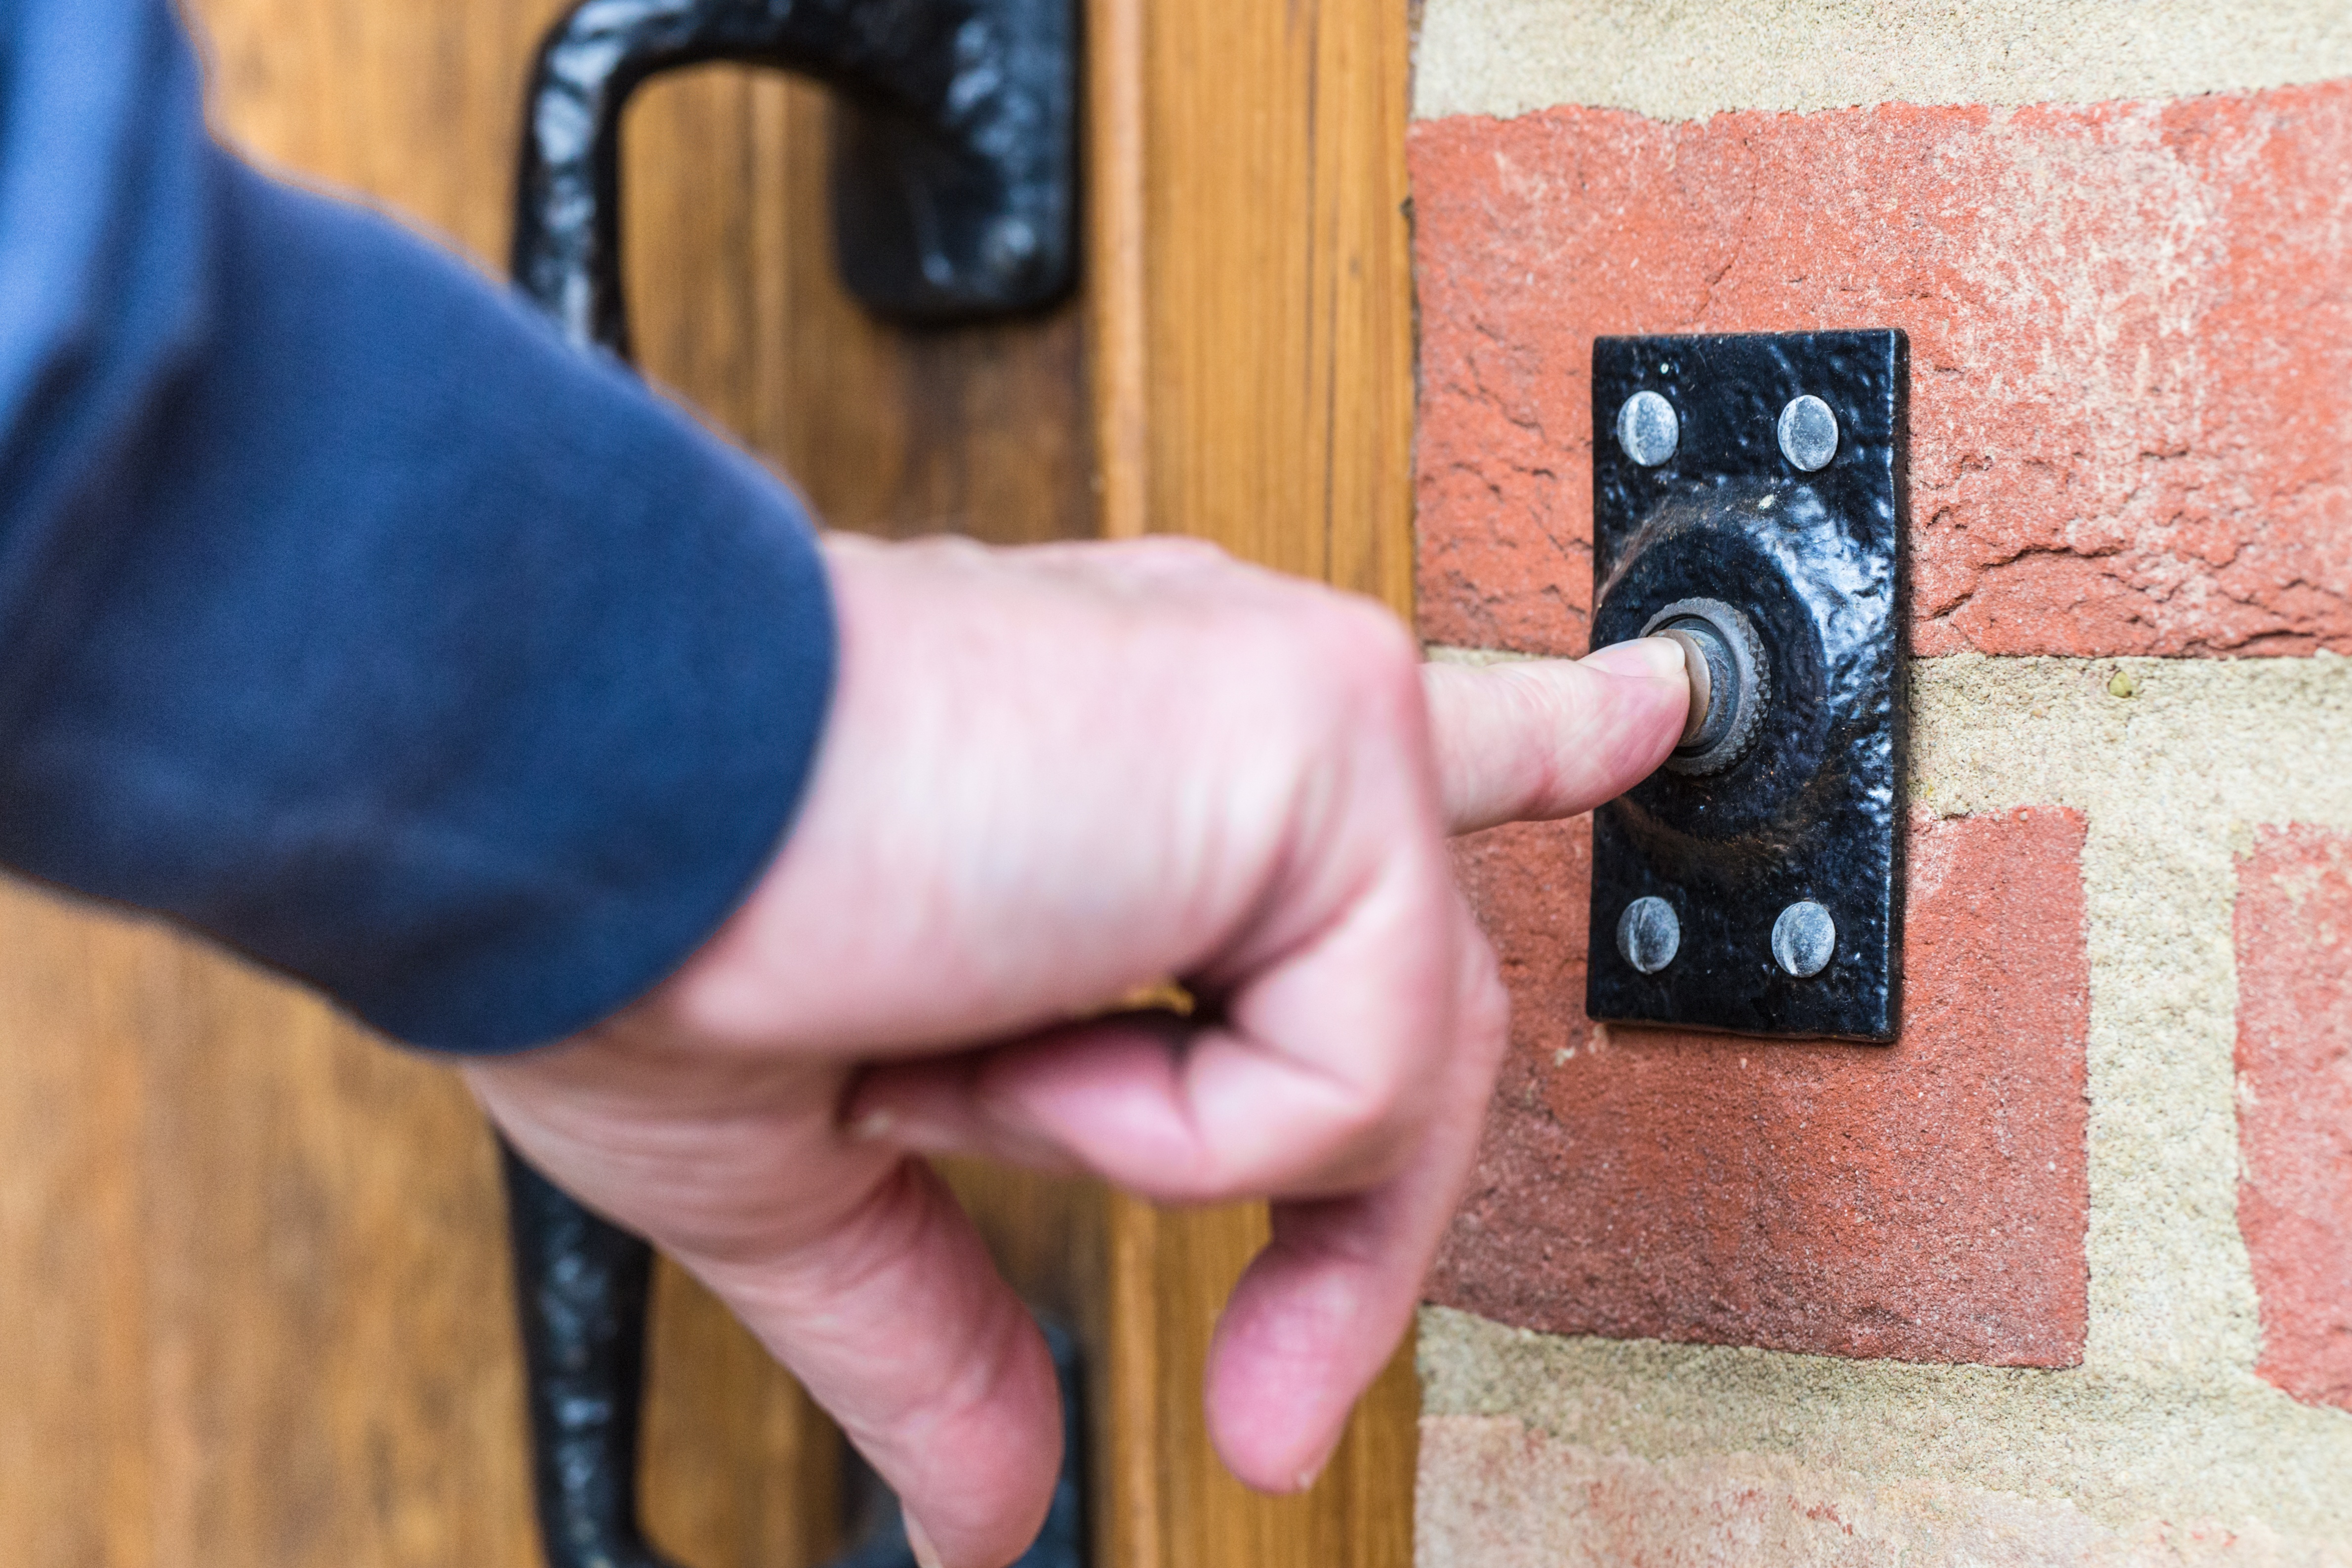 Doorbell | Source: Shutterstock